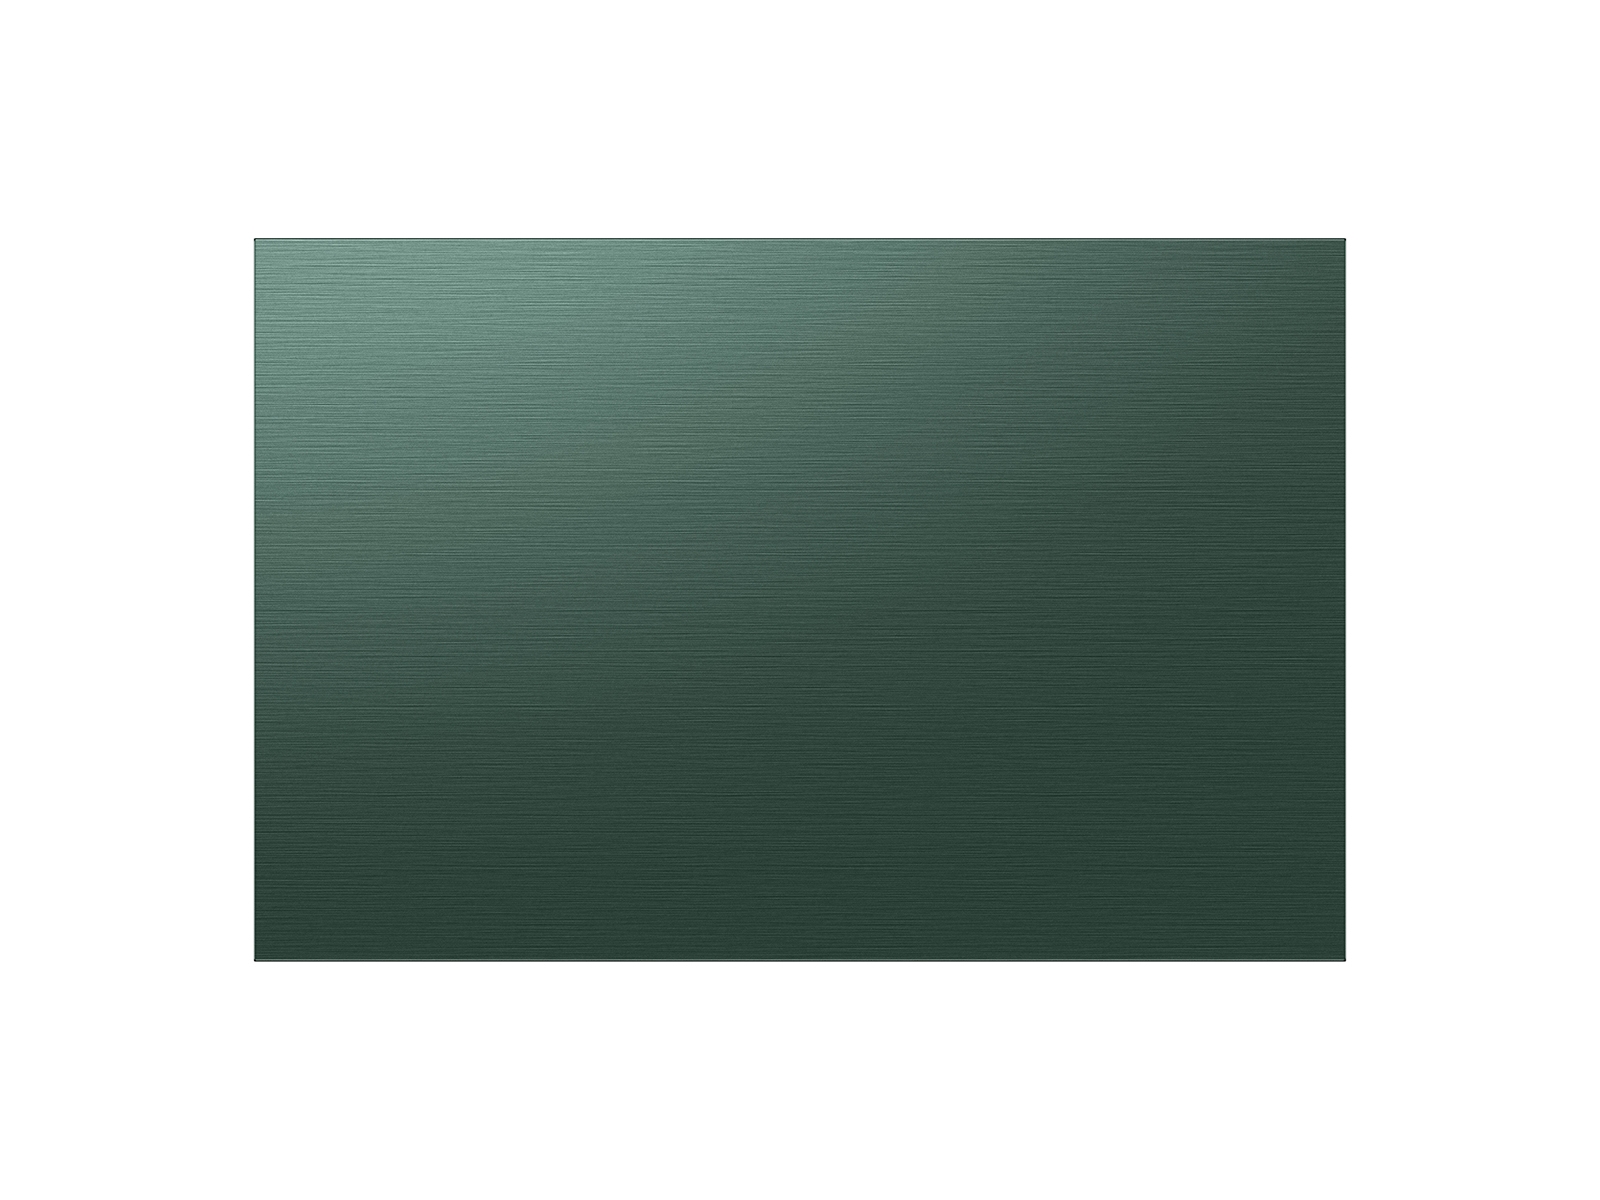 Thumbnail image of Bespoke 3-Door French Door Refrigerator Panel in Emerald Green Steel - Bottom Panel